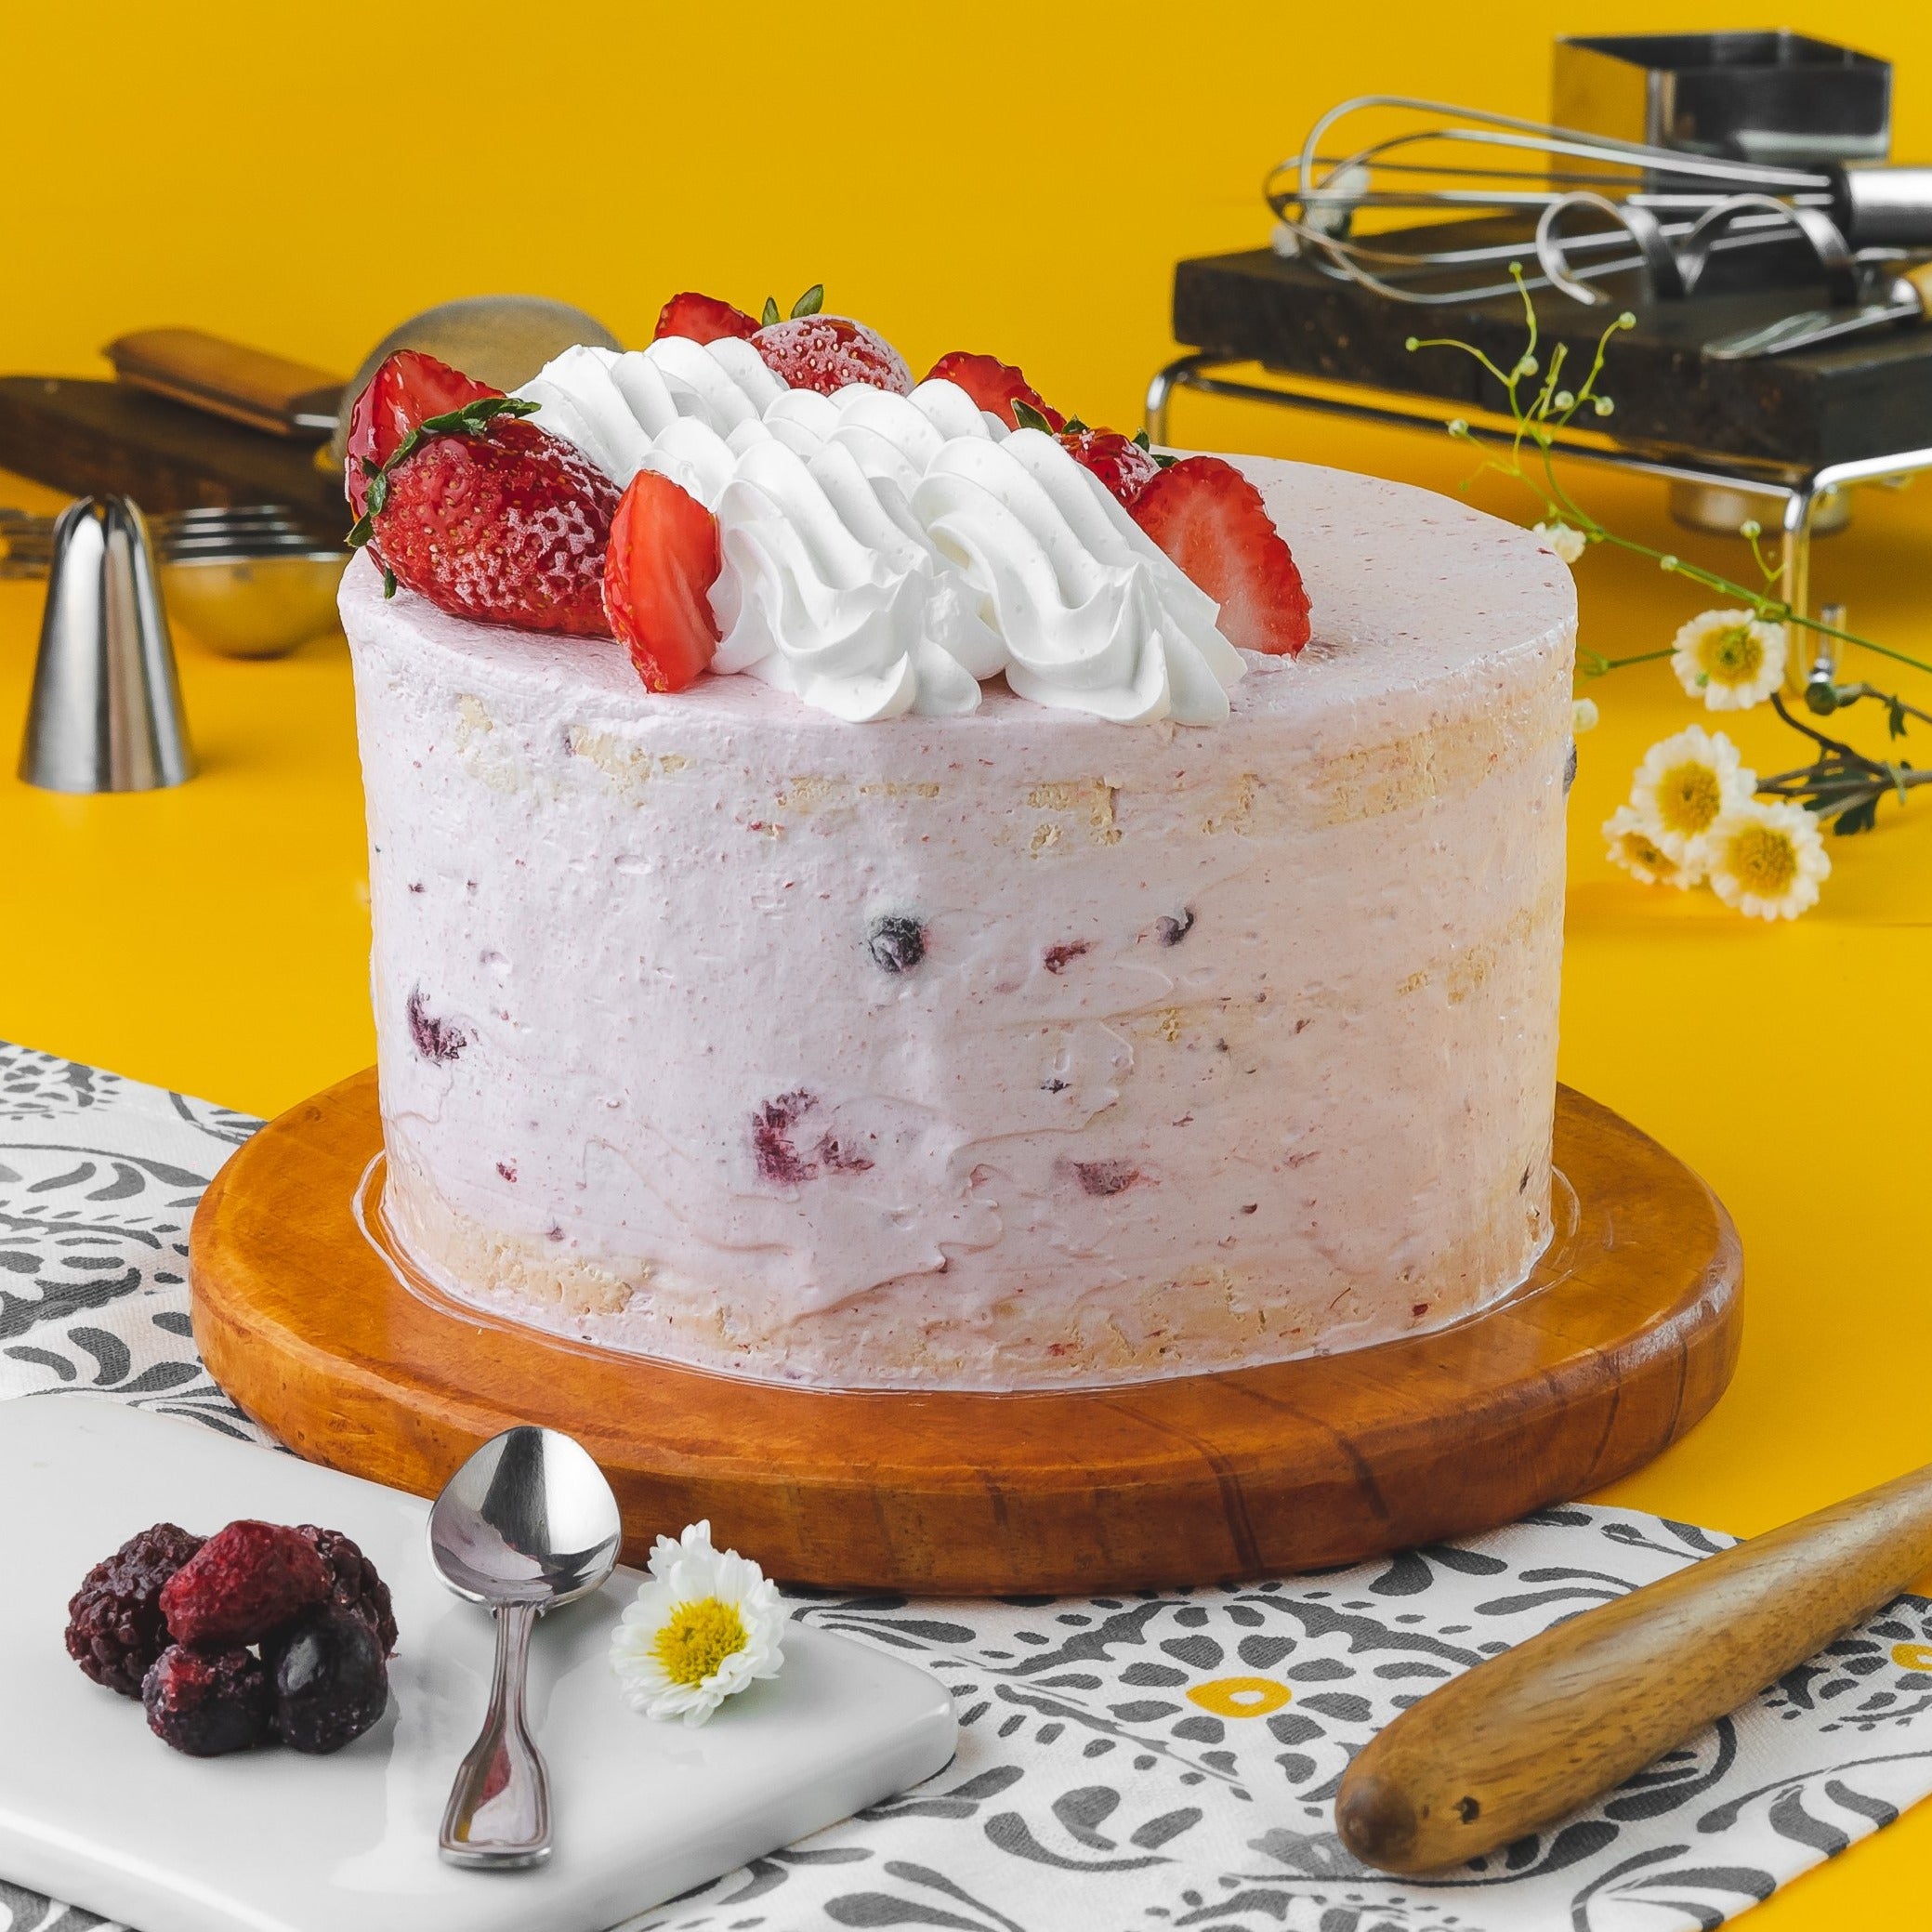 Torta helada de merengue, rellena con berries y mermelada de frambuesa - Pasteleria Pita Cake